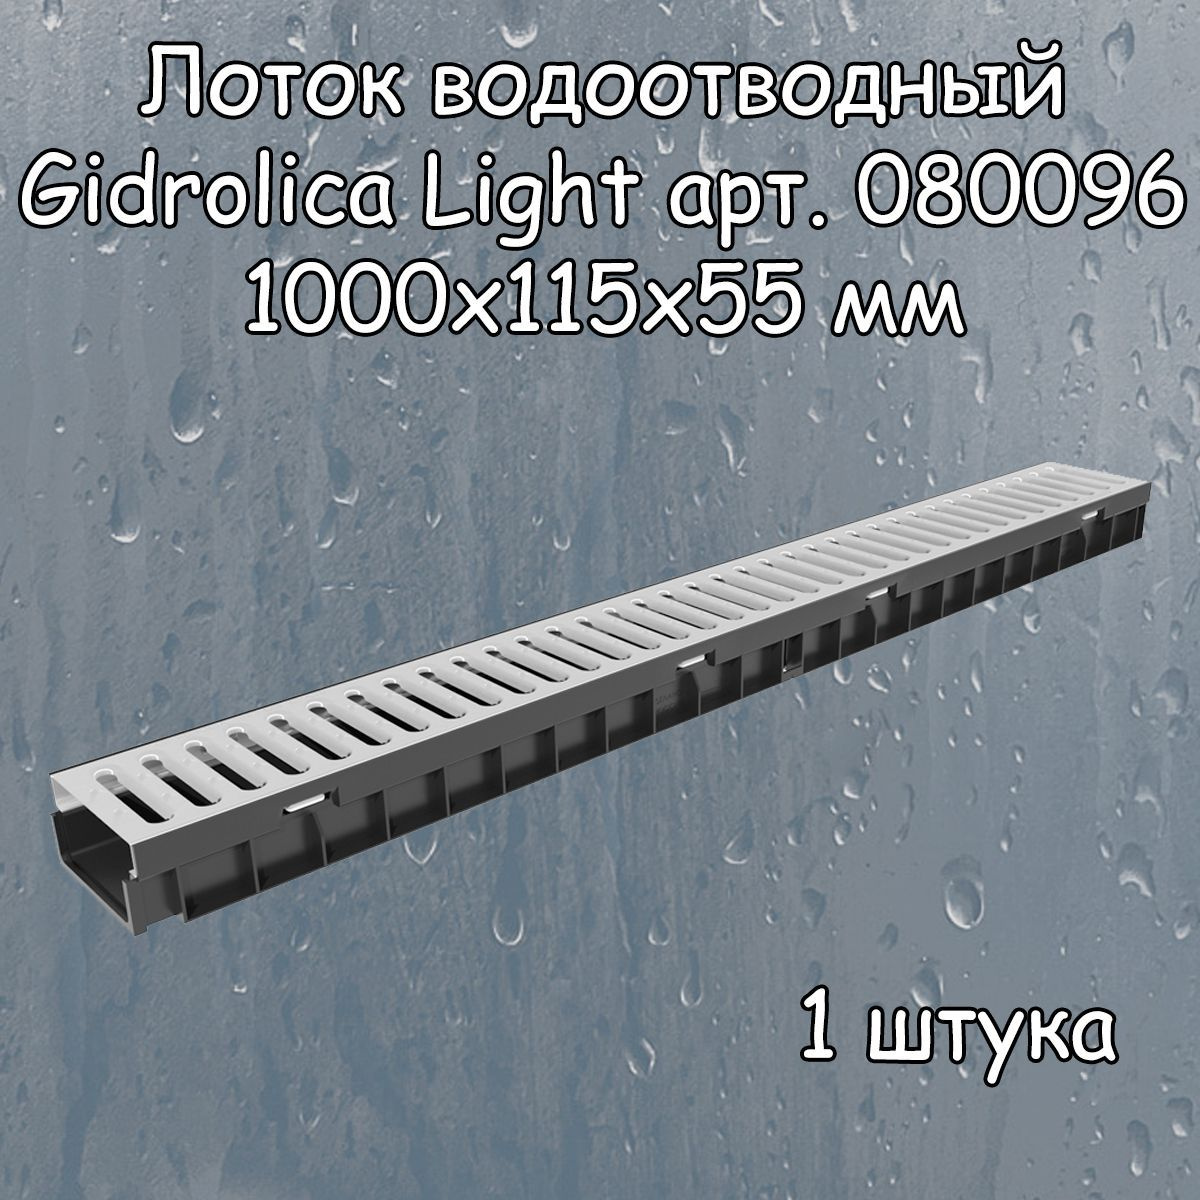 Лоток водоотводный 1000х115х55 мм Gidrolica Light с пластиковой щелевой решеткой DN100 (А15), 1 штука